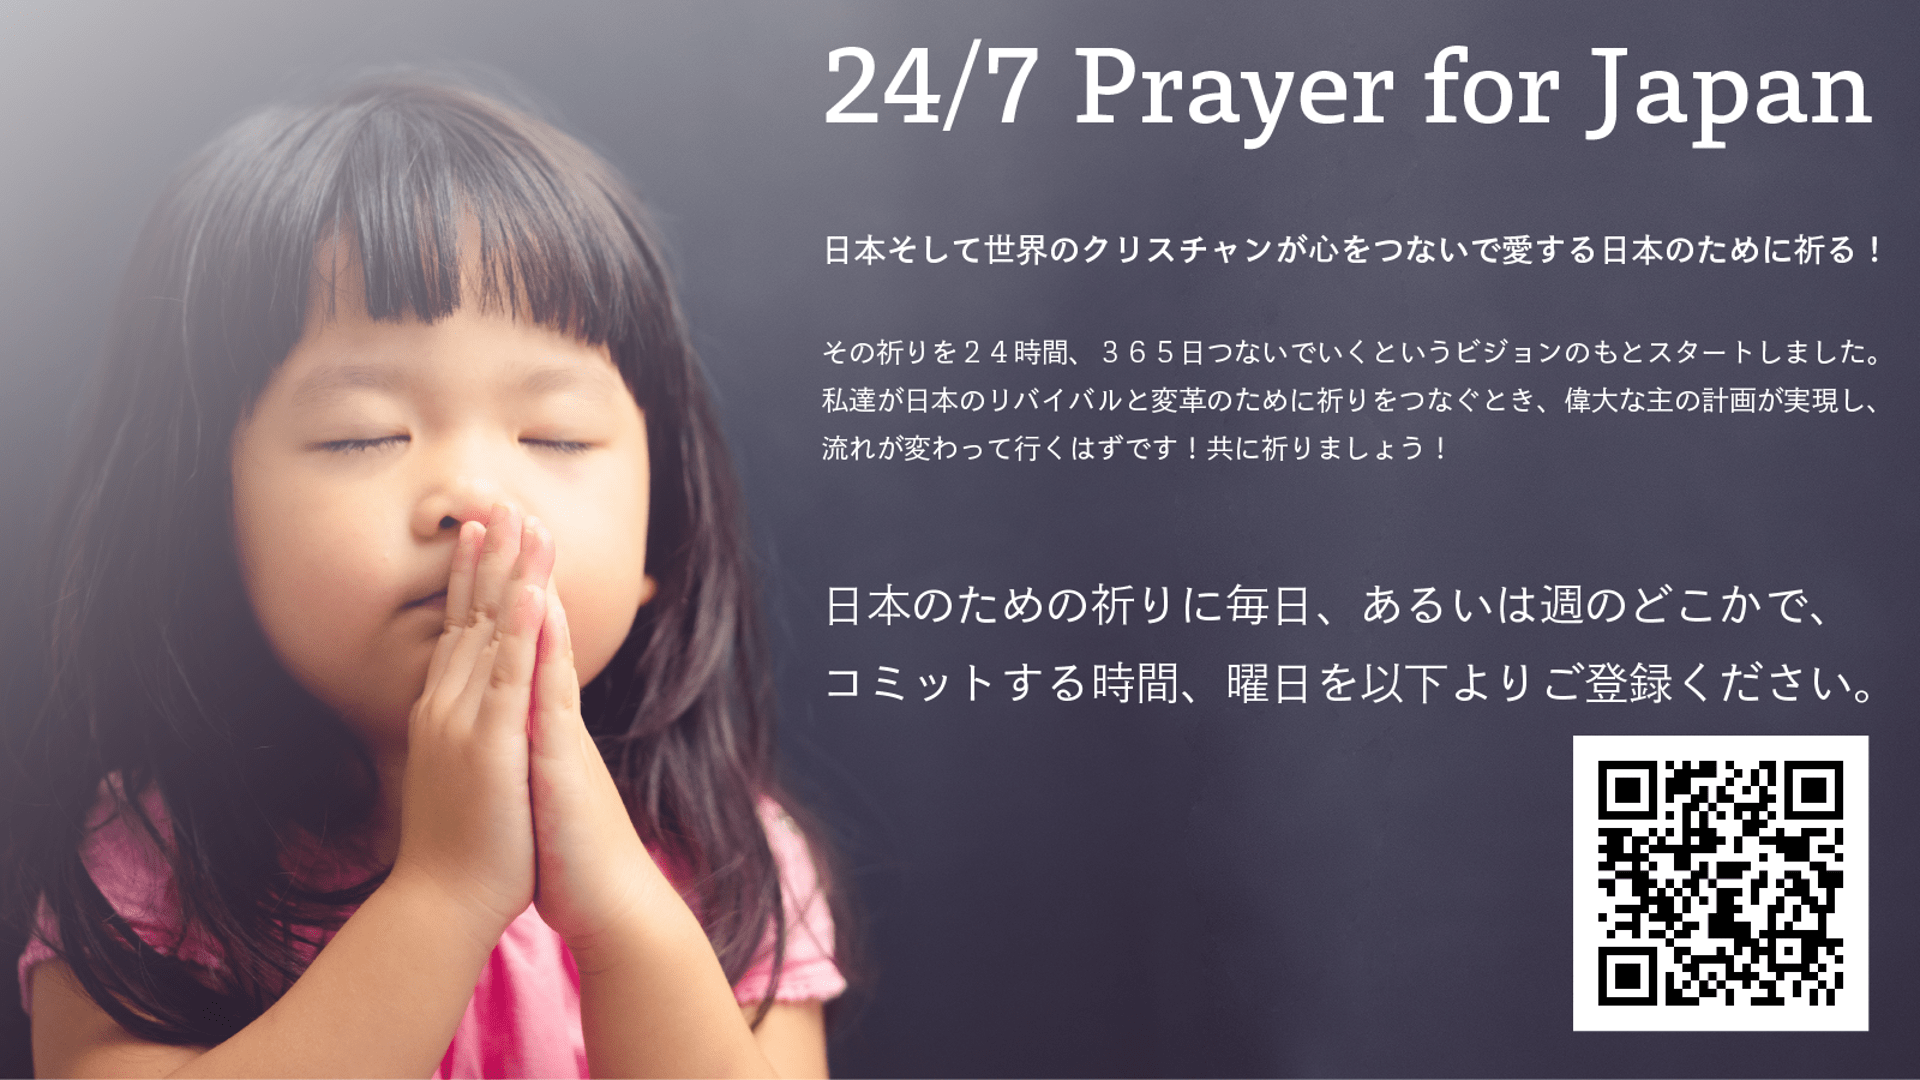 24/7 Prayer for Japan